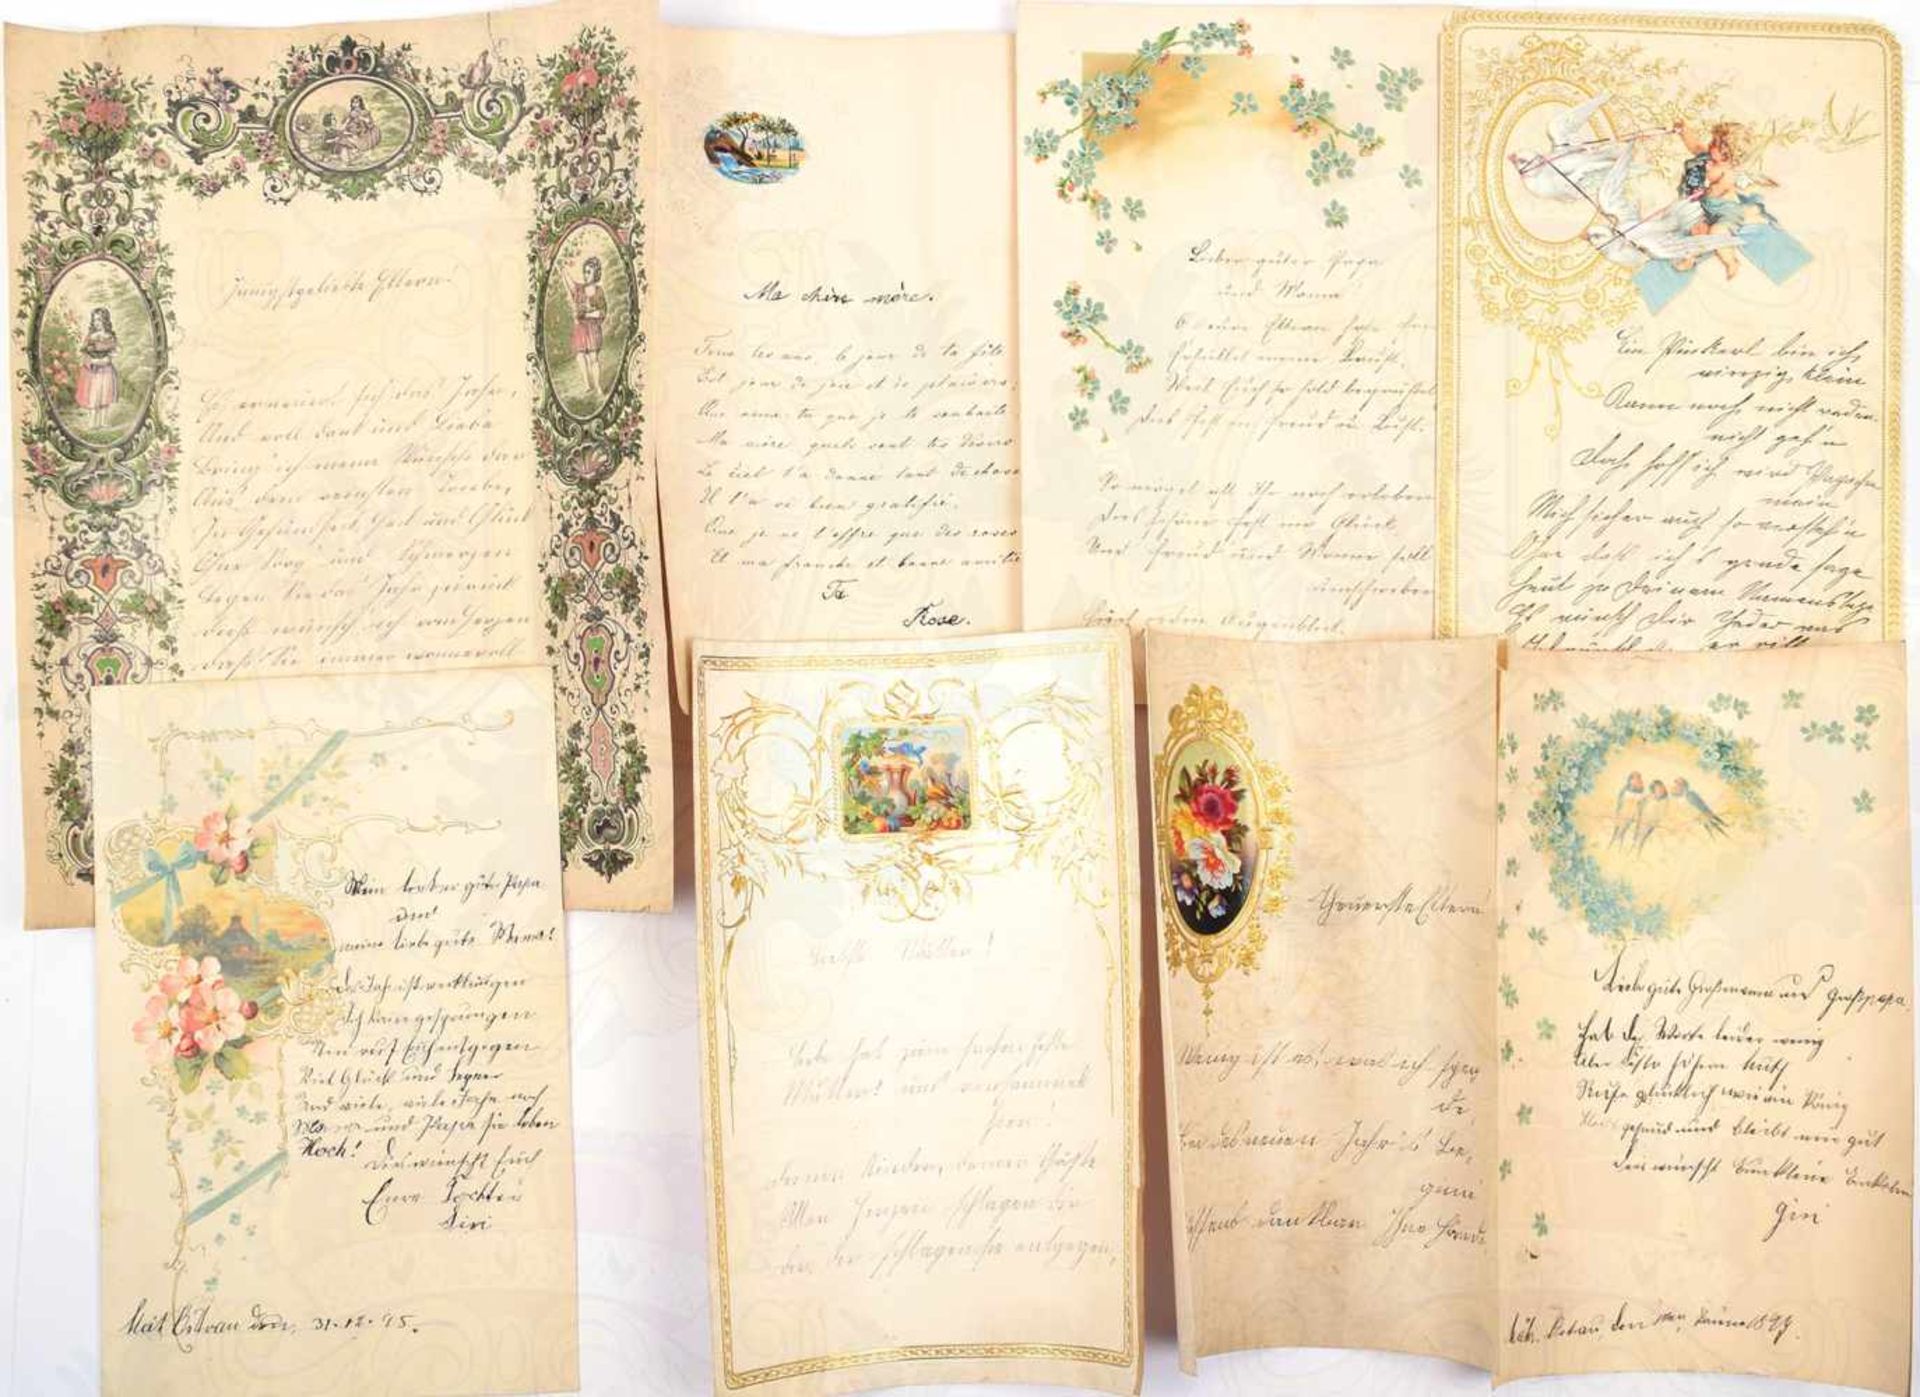 17 SCHMUCKBRIEFE 1870-1899, farb. Vordrucke mit Motiven, tls. goldgepr., m. Feder u. Bleistift